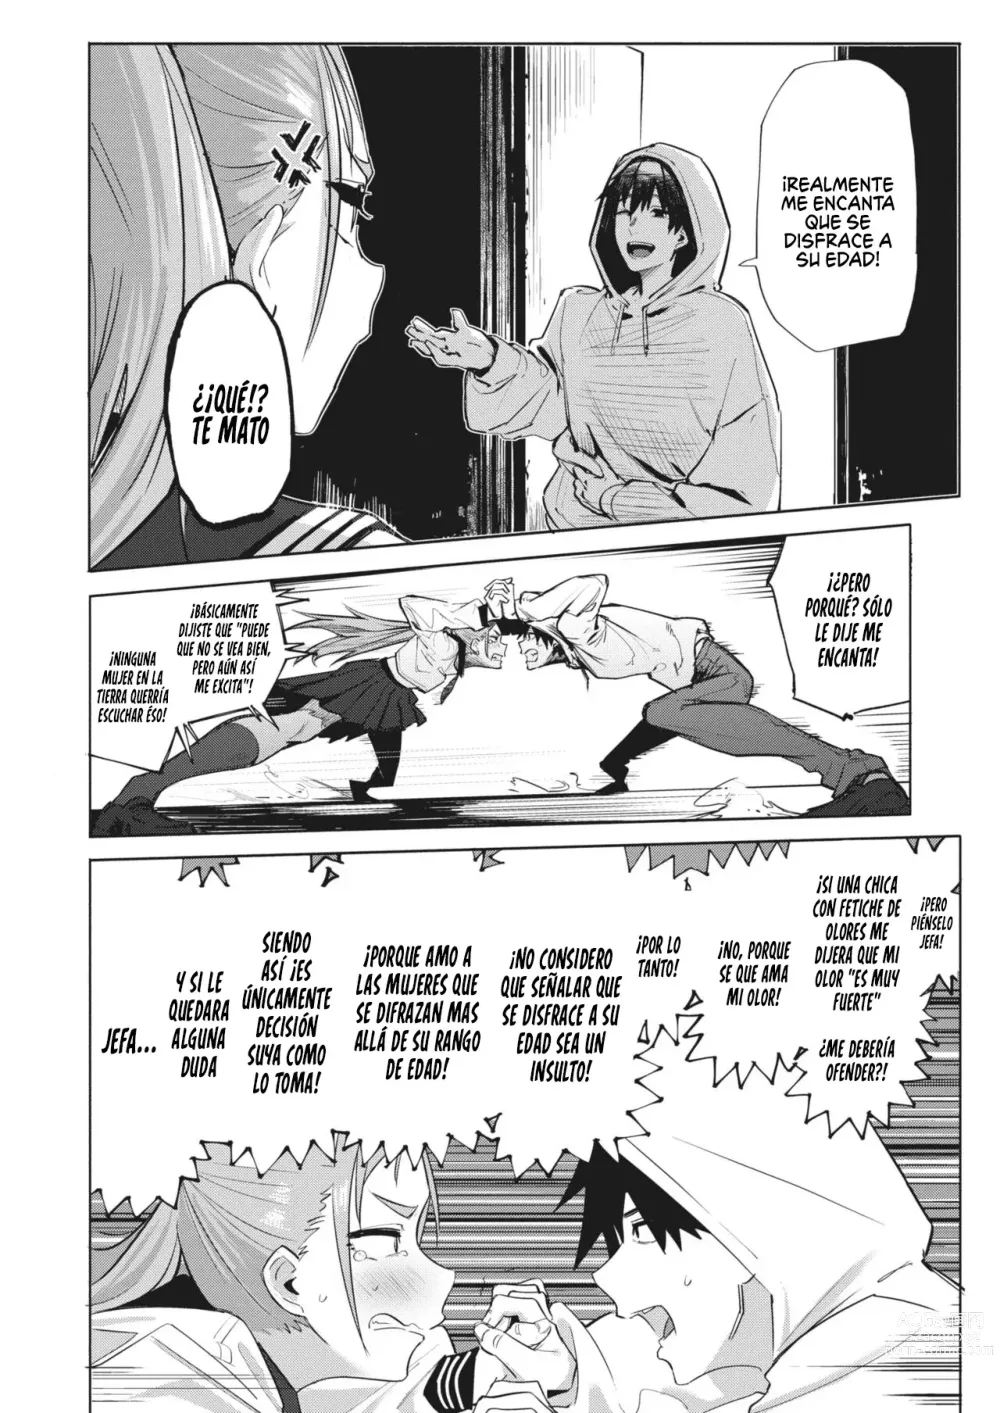 Page 4 of manga Estas exagerando abuela!